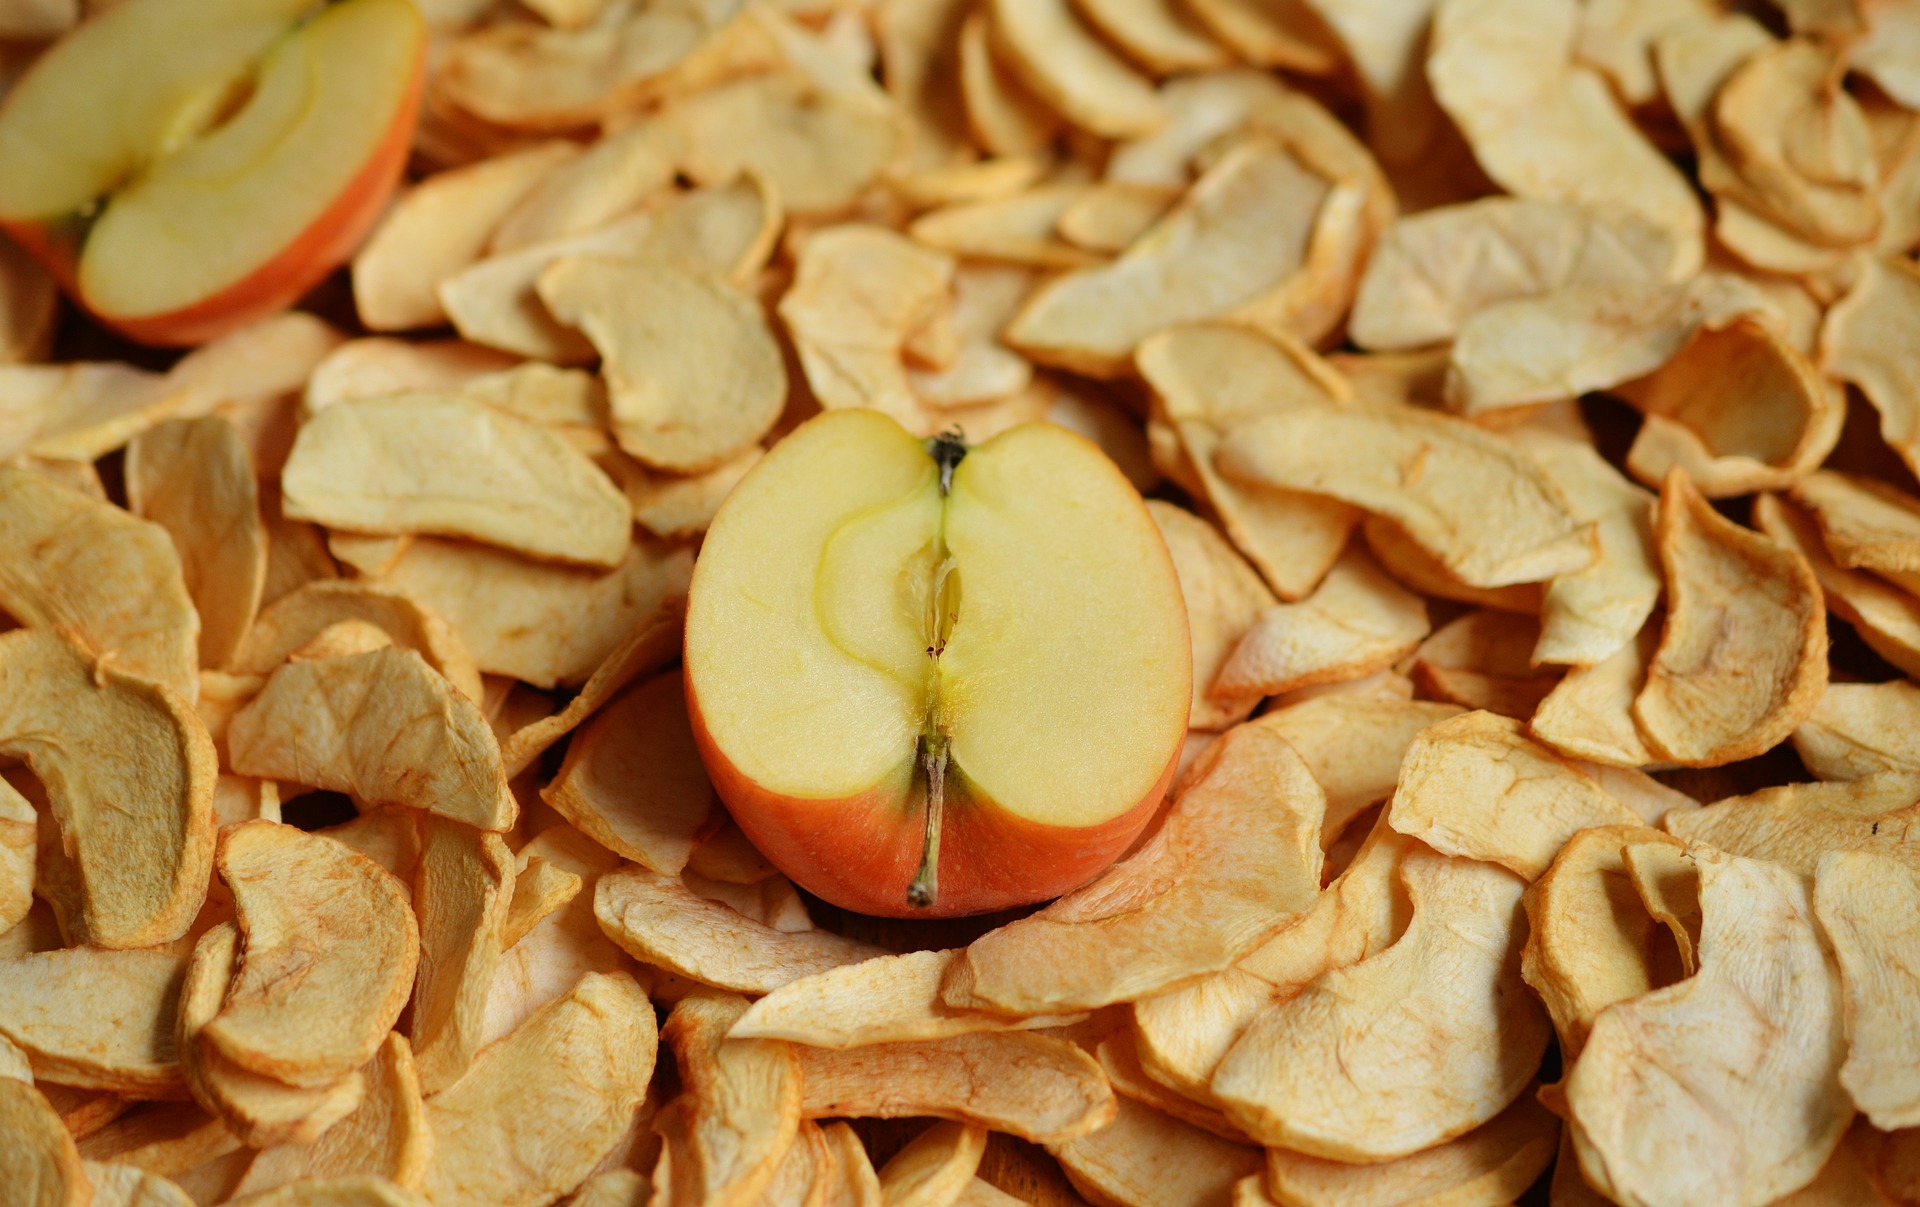 suszone jabłka jako zamienniki dla niezdrowych produktów